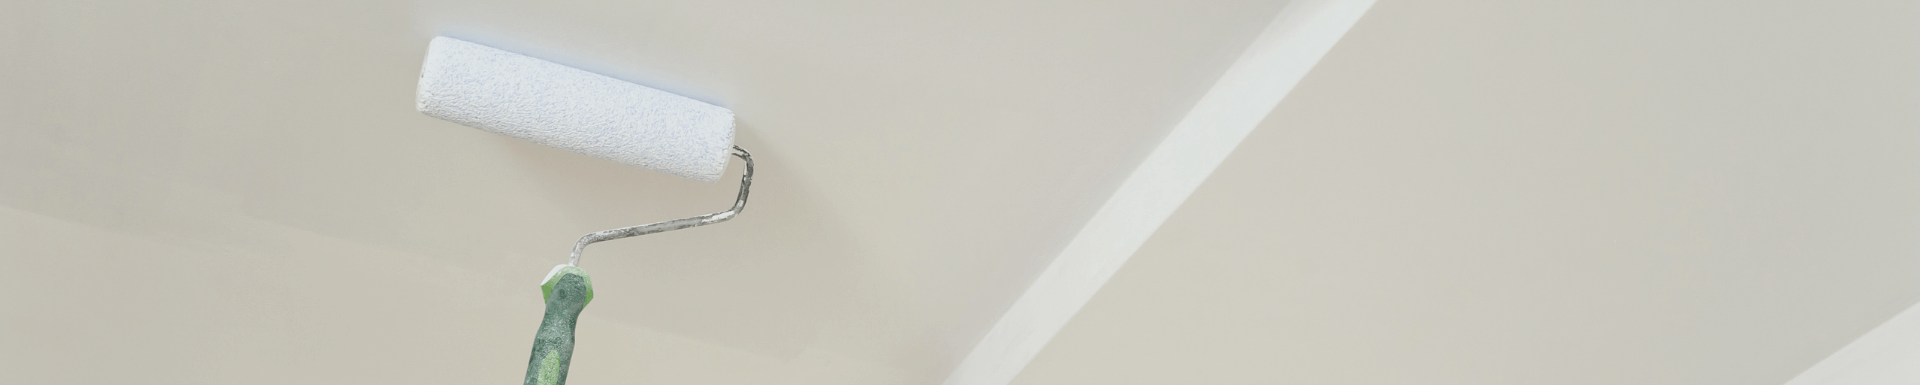 Водоемульсійна фарба як зняти її із стелі